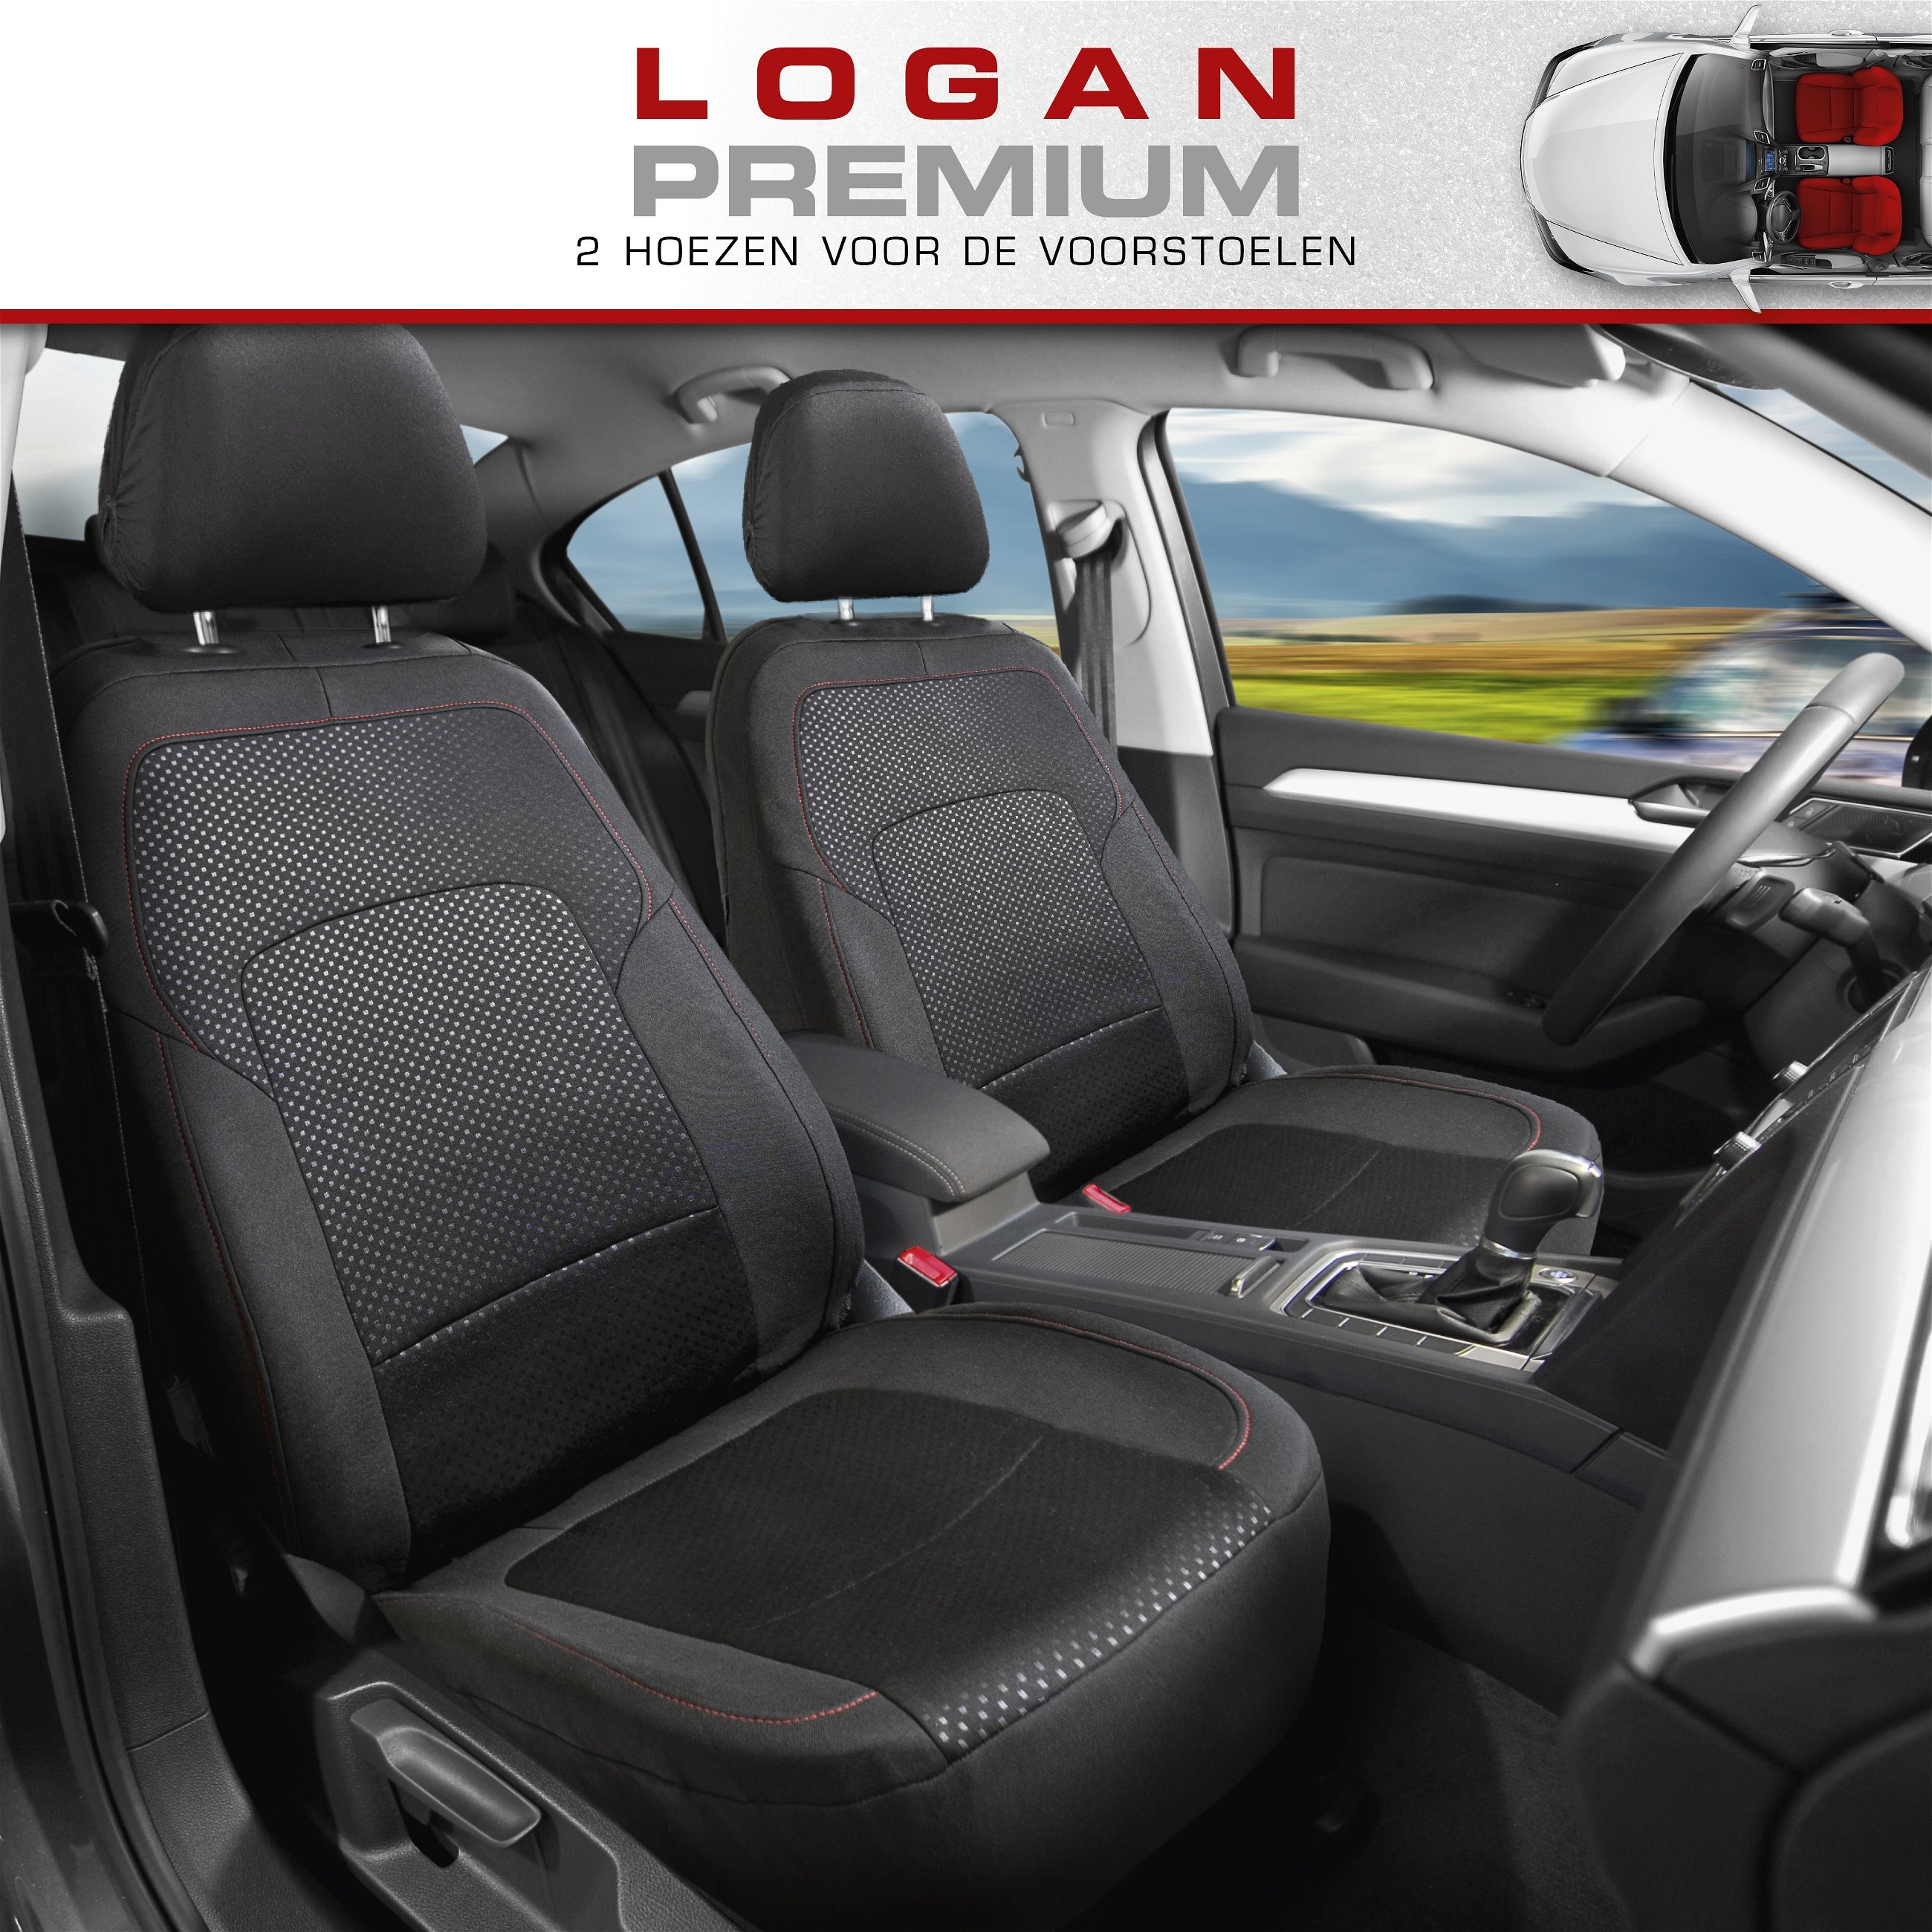 Premium autozetelhoezen Logan met rits, ZIPP-IT zetelhoezen, 2 voorzetelhoezen zwart/rood 11860